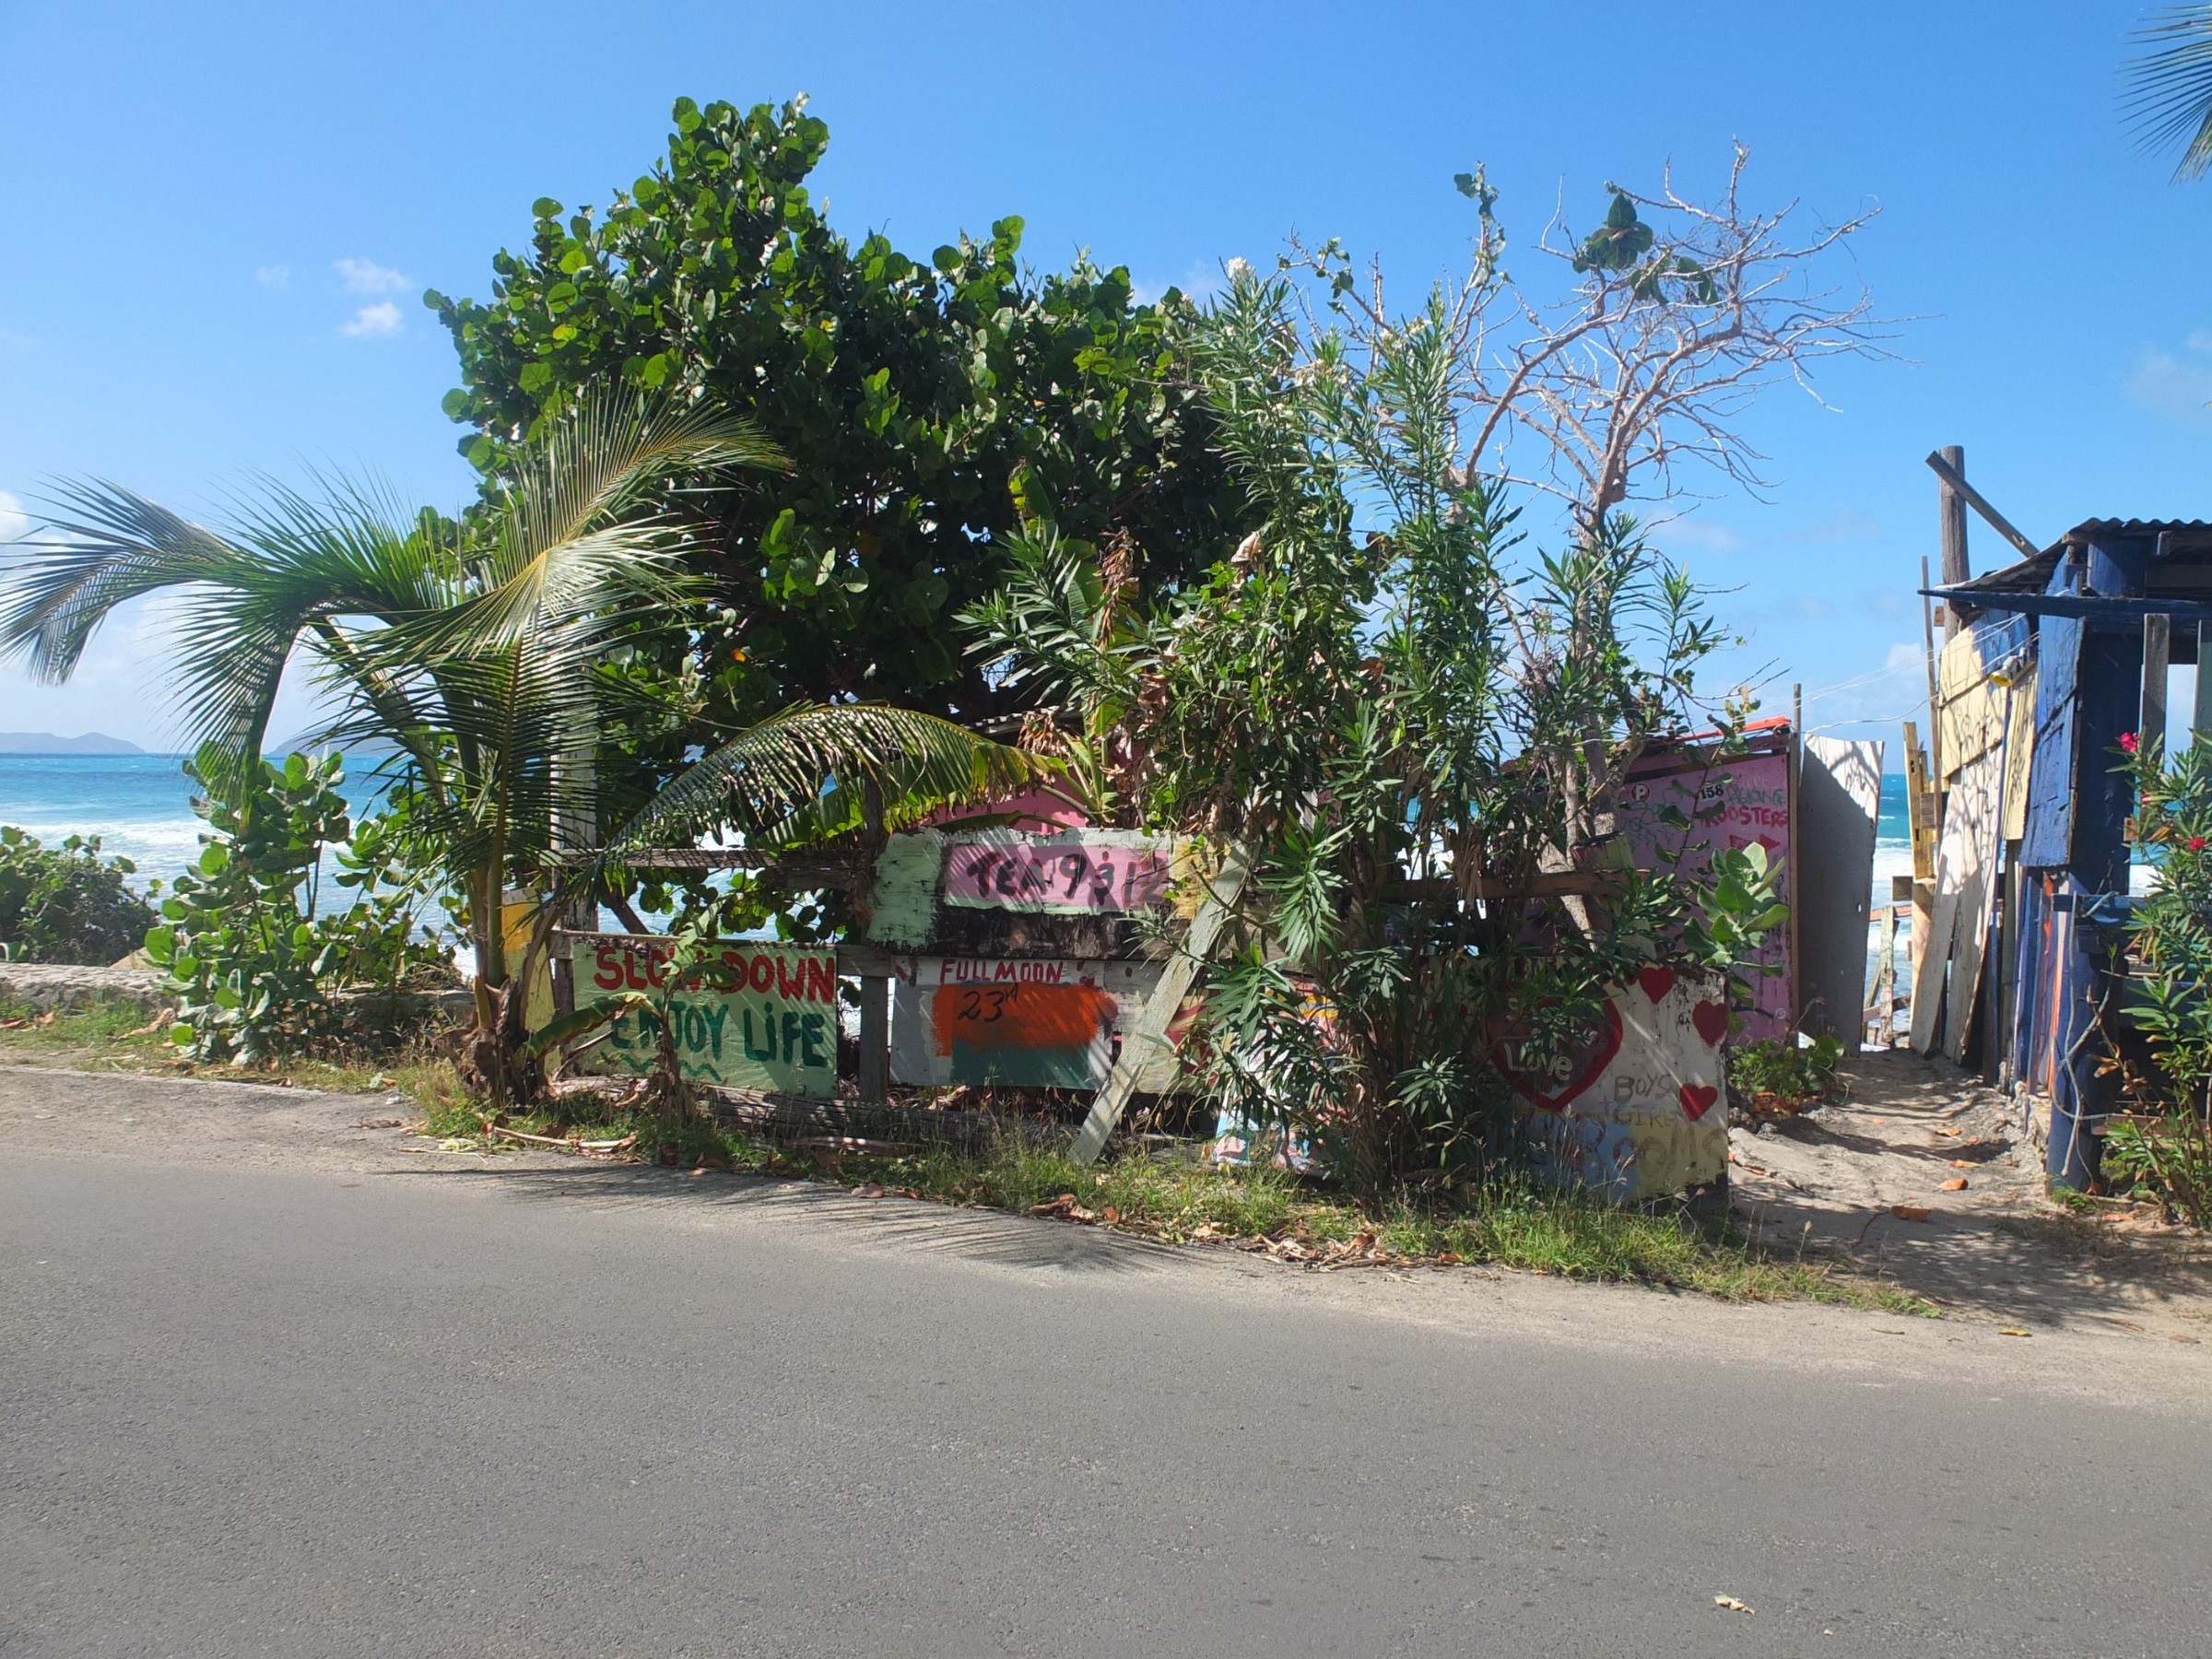 Bomba shack british virgin islands